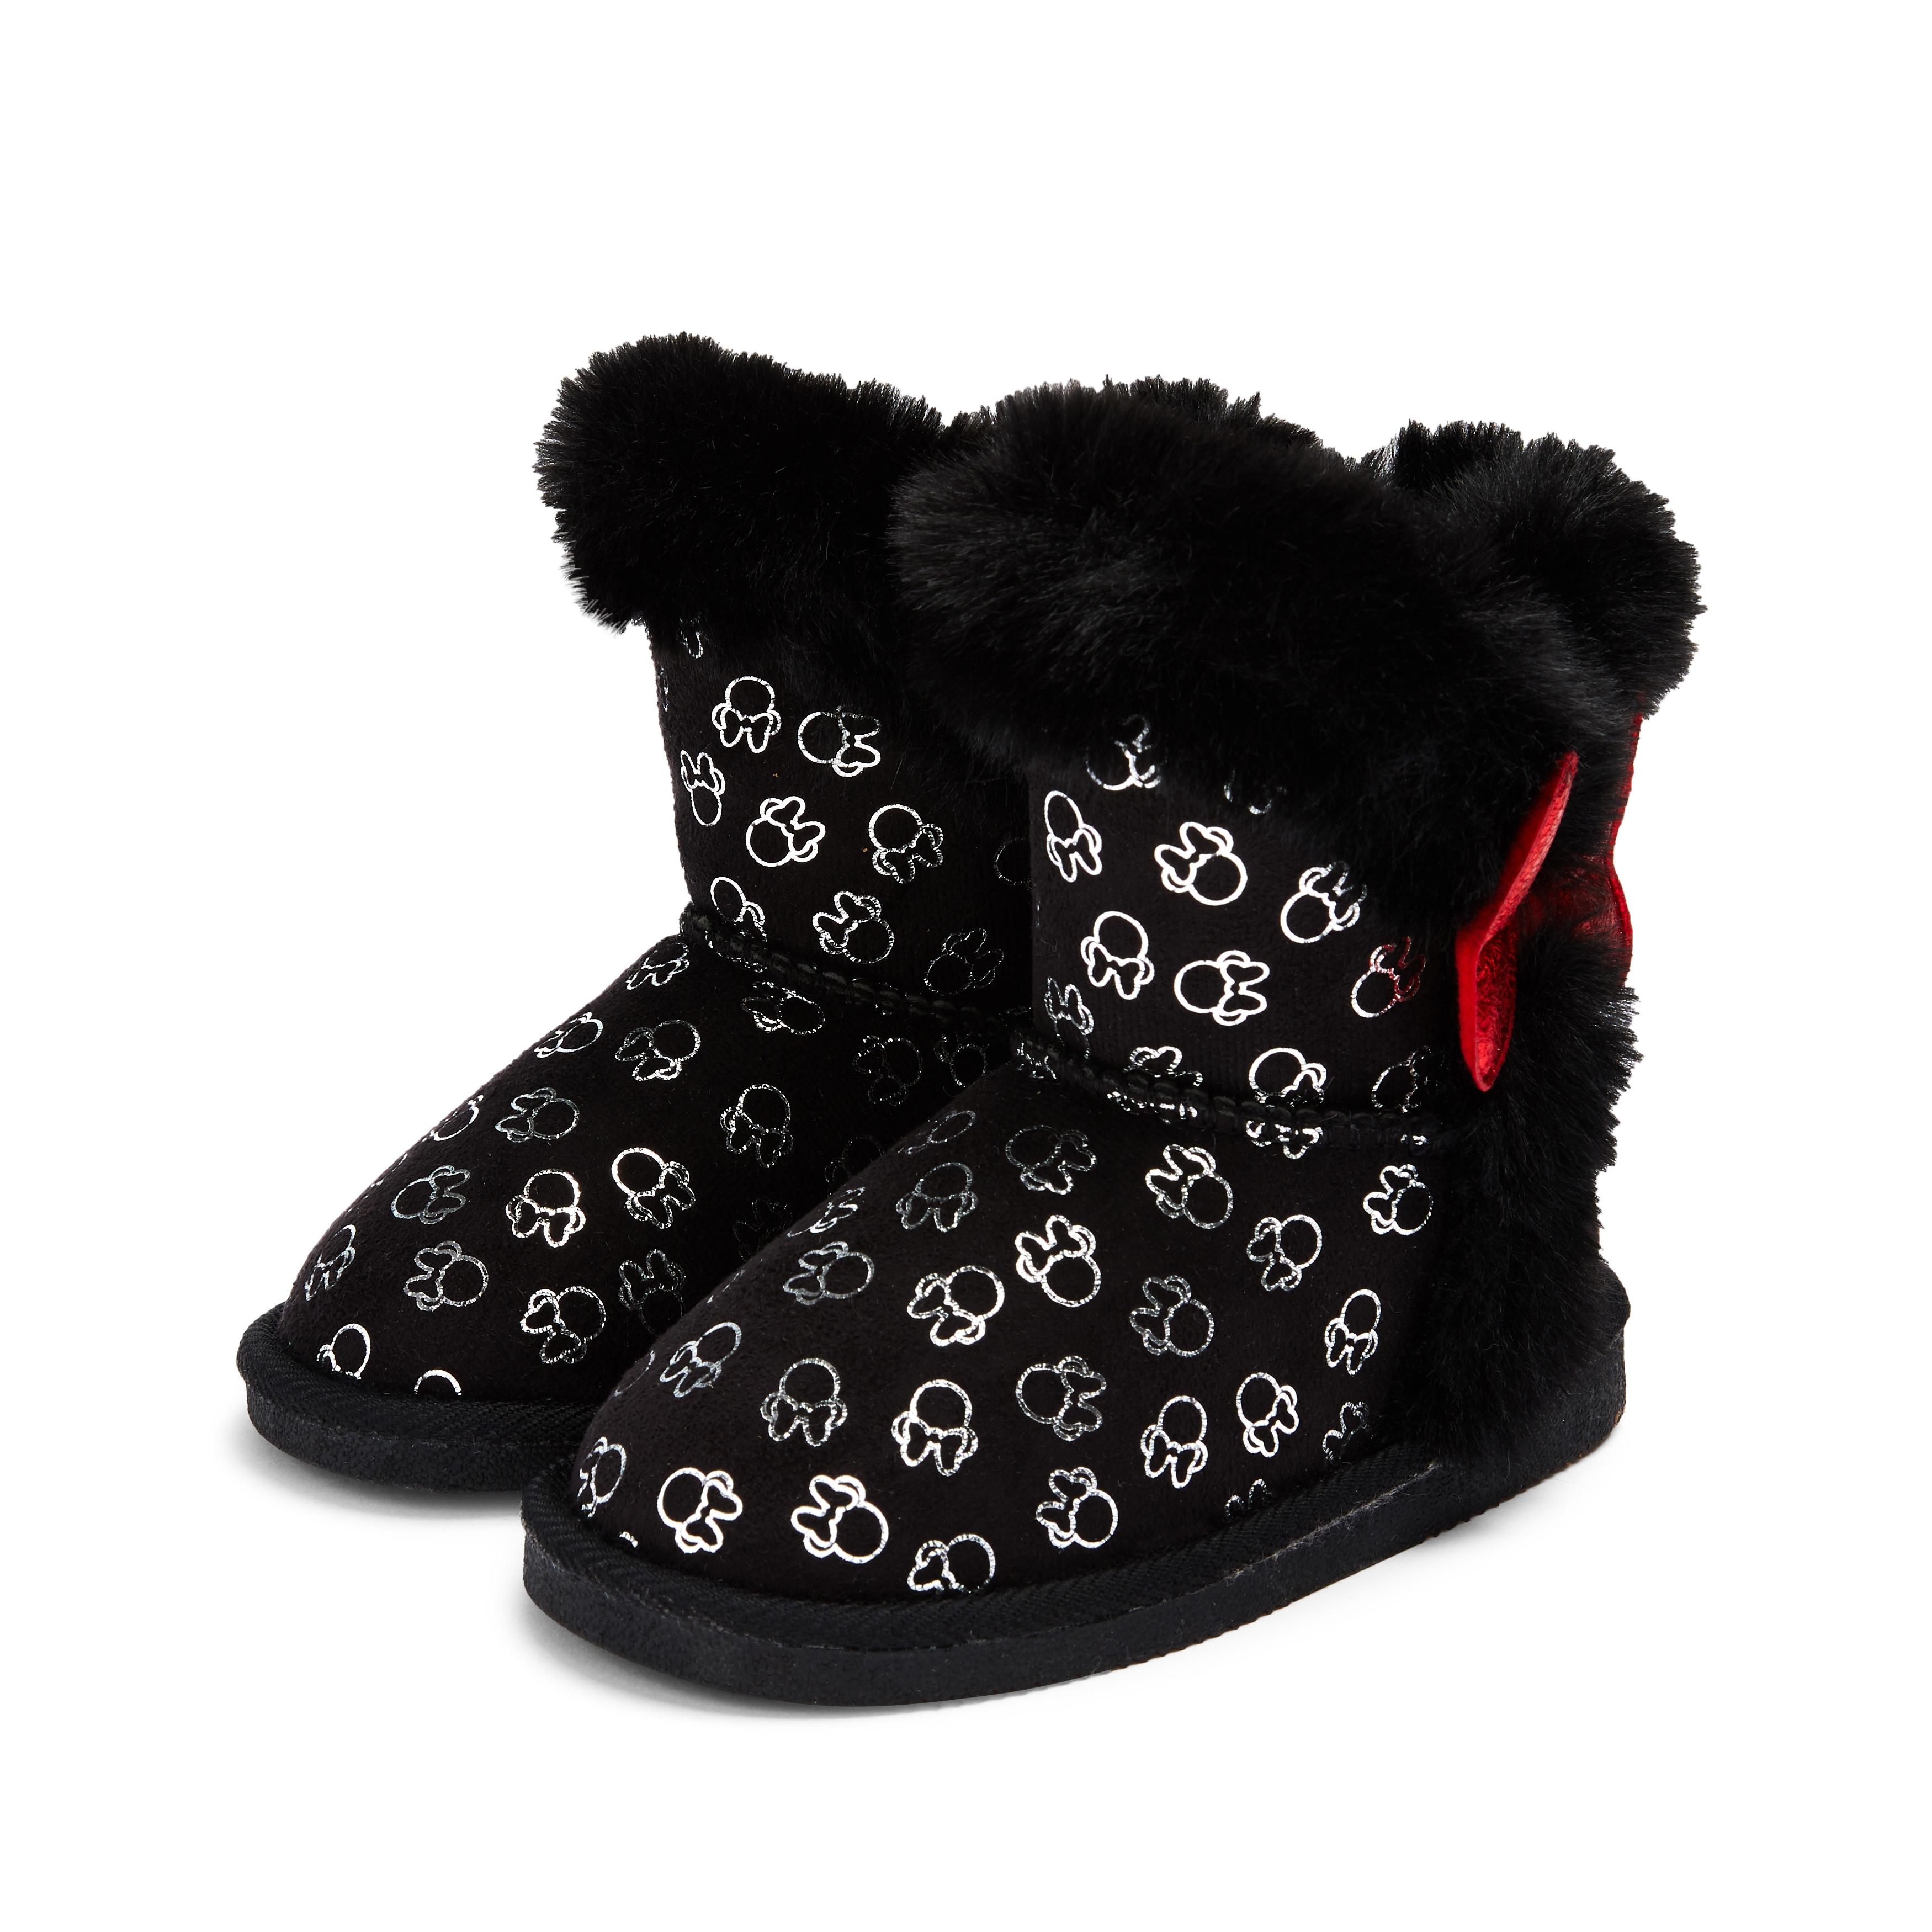 Ropa, calzado complementos Disney Minnie Pantorrilla Botas De Encaje Botas Negras Niña Chicas jóvenes primark Moda NA5065303